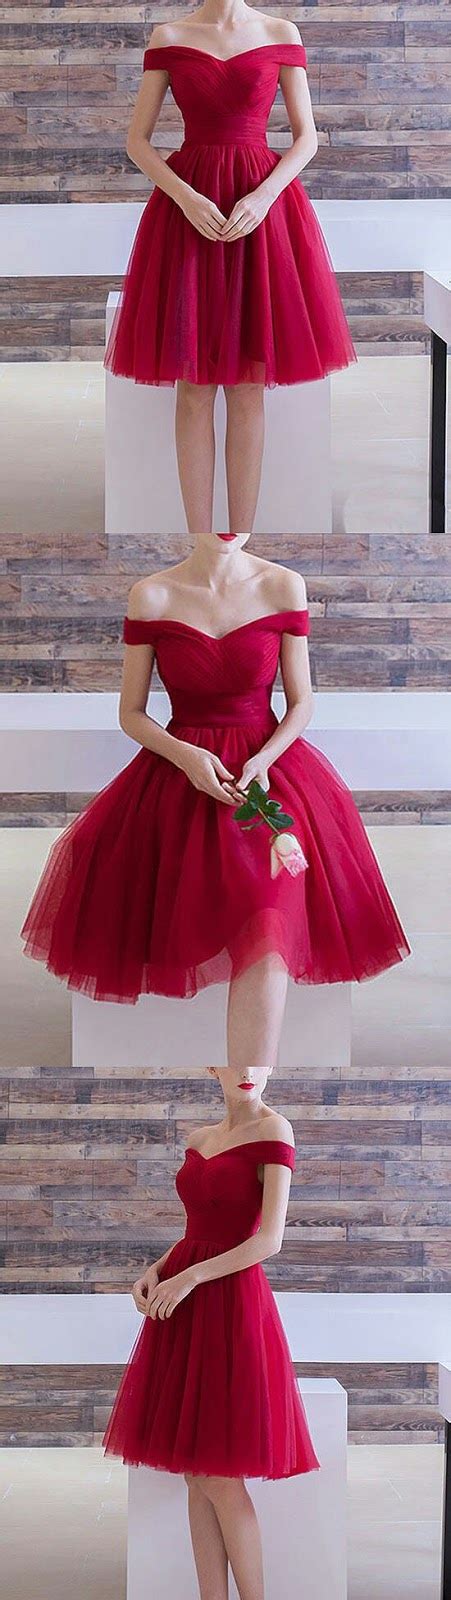 Fαshiση Gαlαxy 98 ☯ Wedding Prom Dress